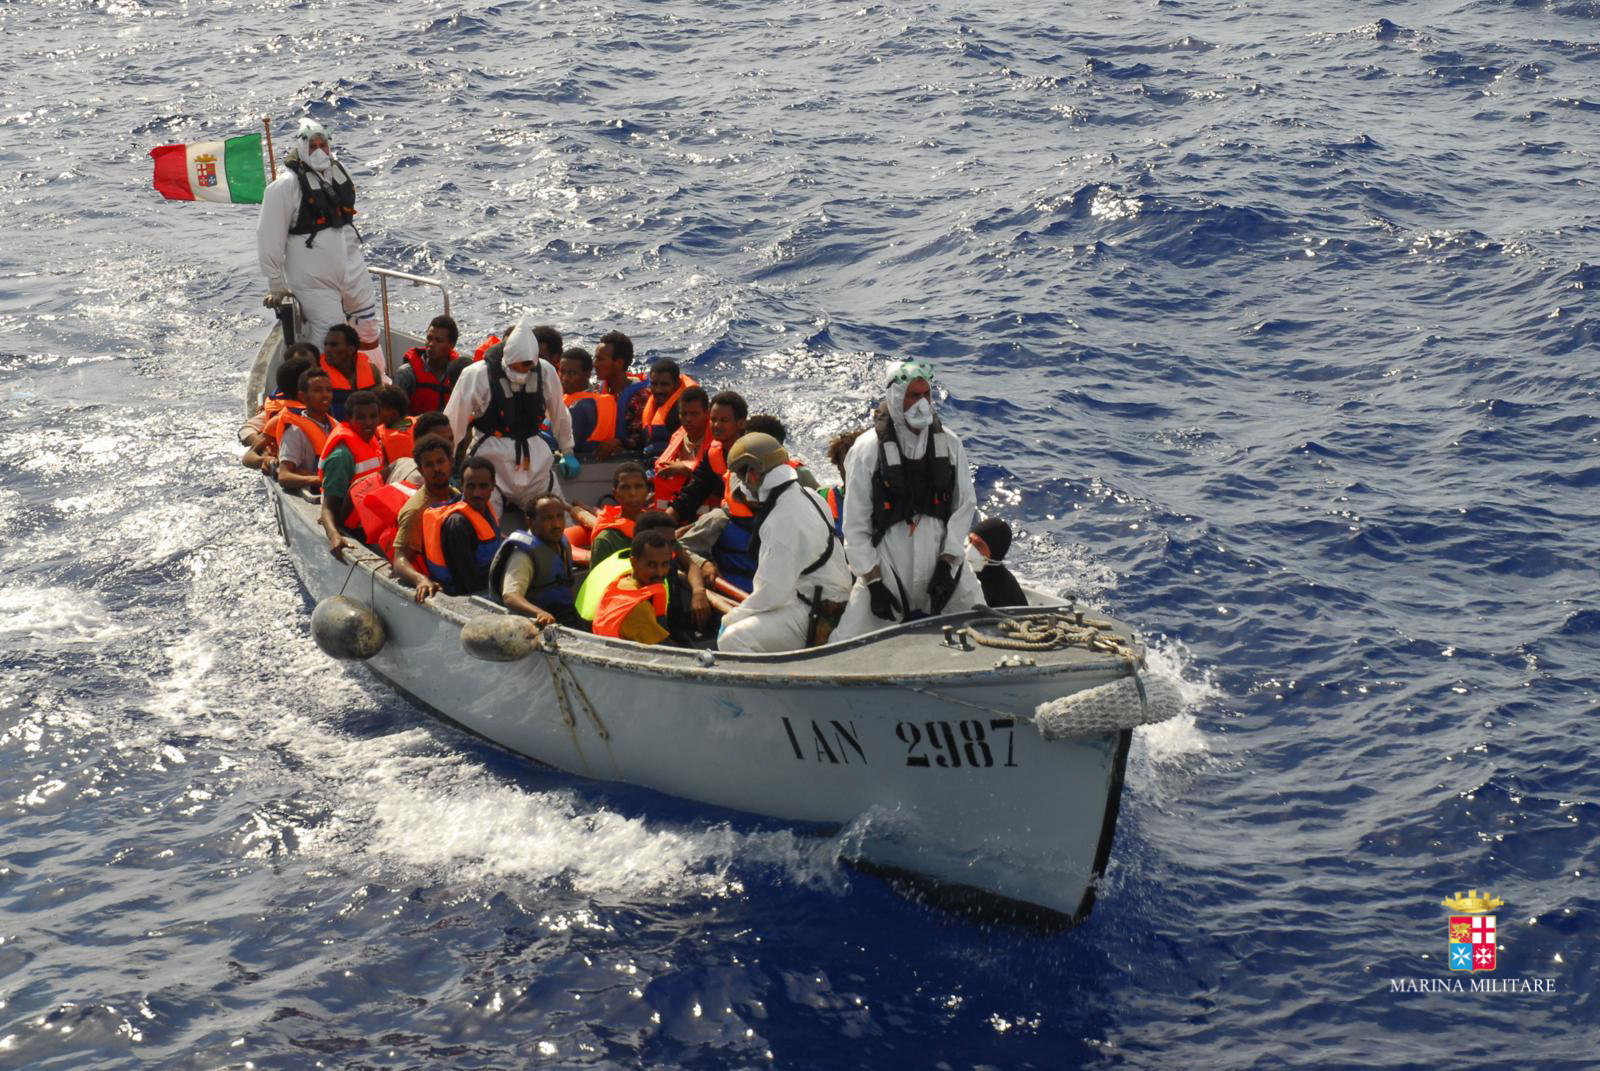 Marina Militare Migranti 4